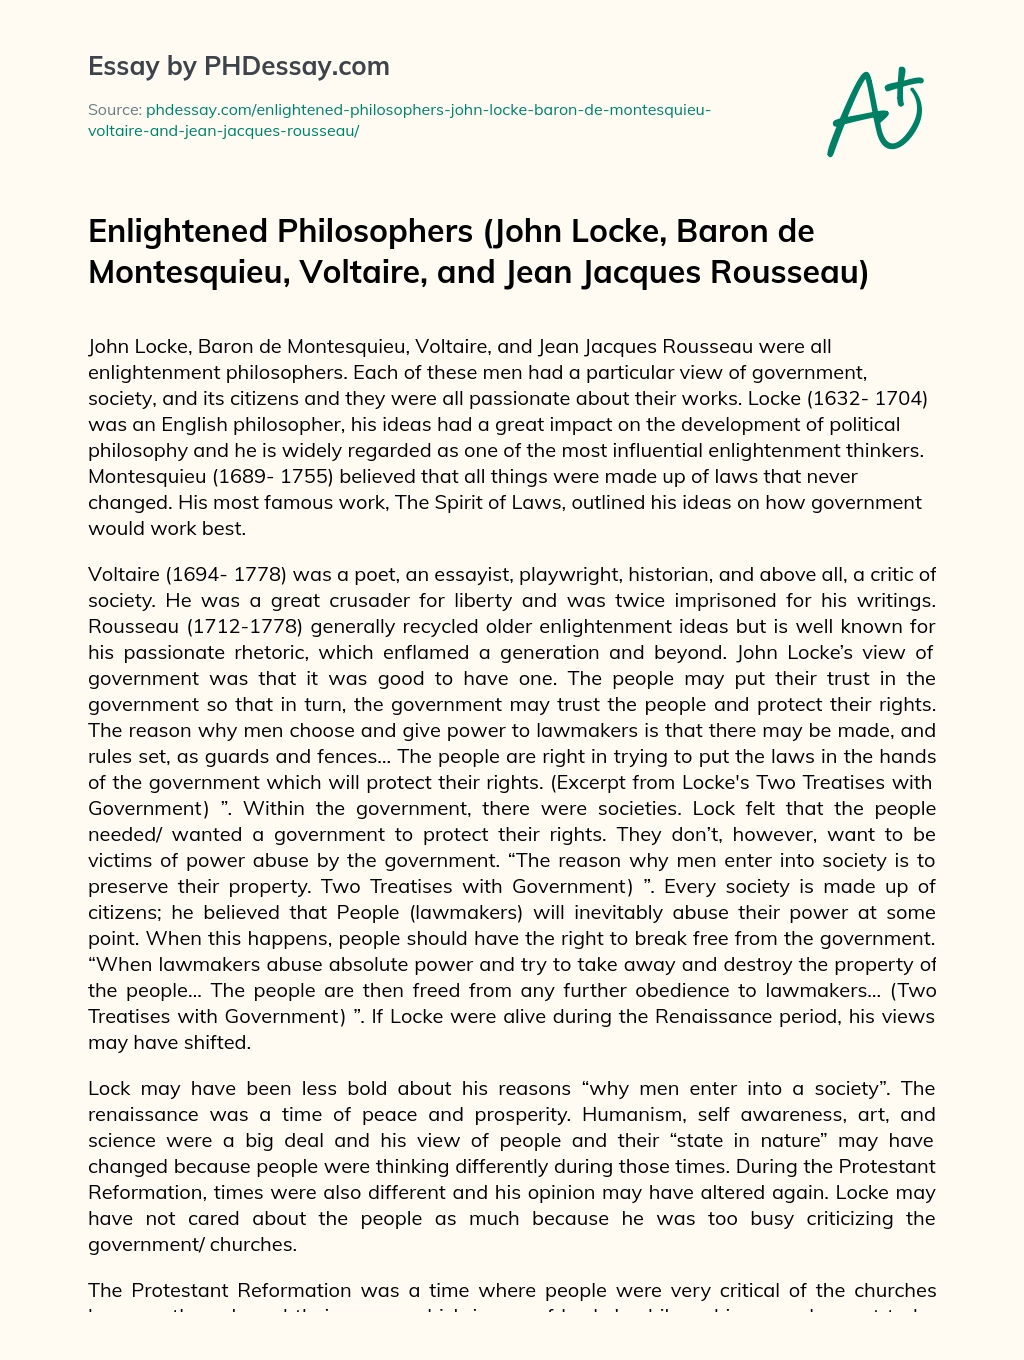 Enlightened Philosophers (John Locke, Baron de Montesquieu, Voltaire, and Jean Jacques Rousseau) essay